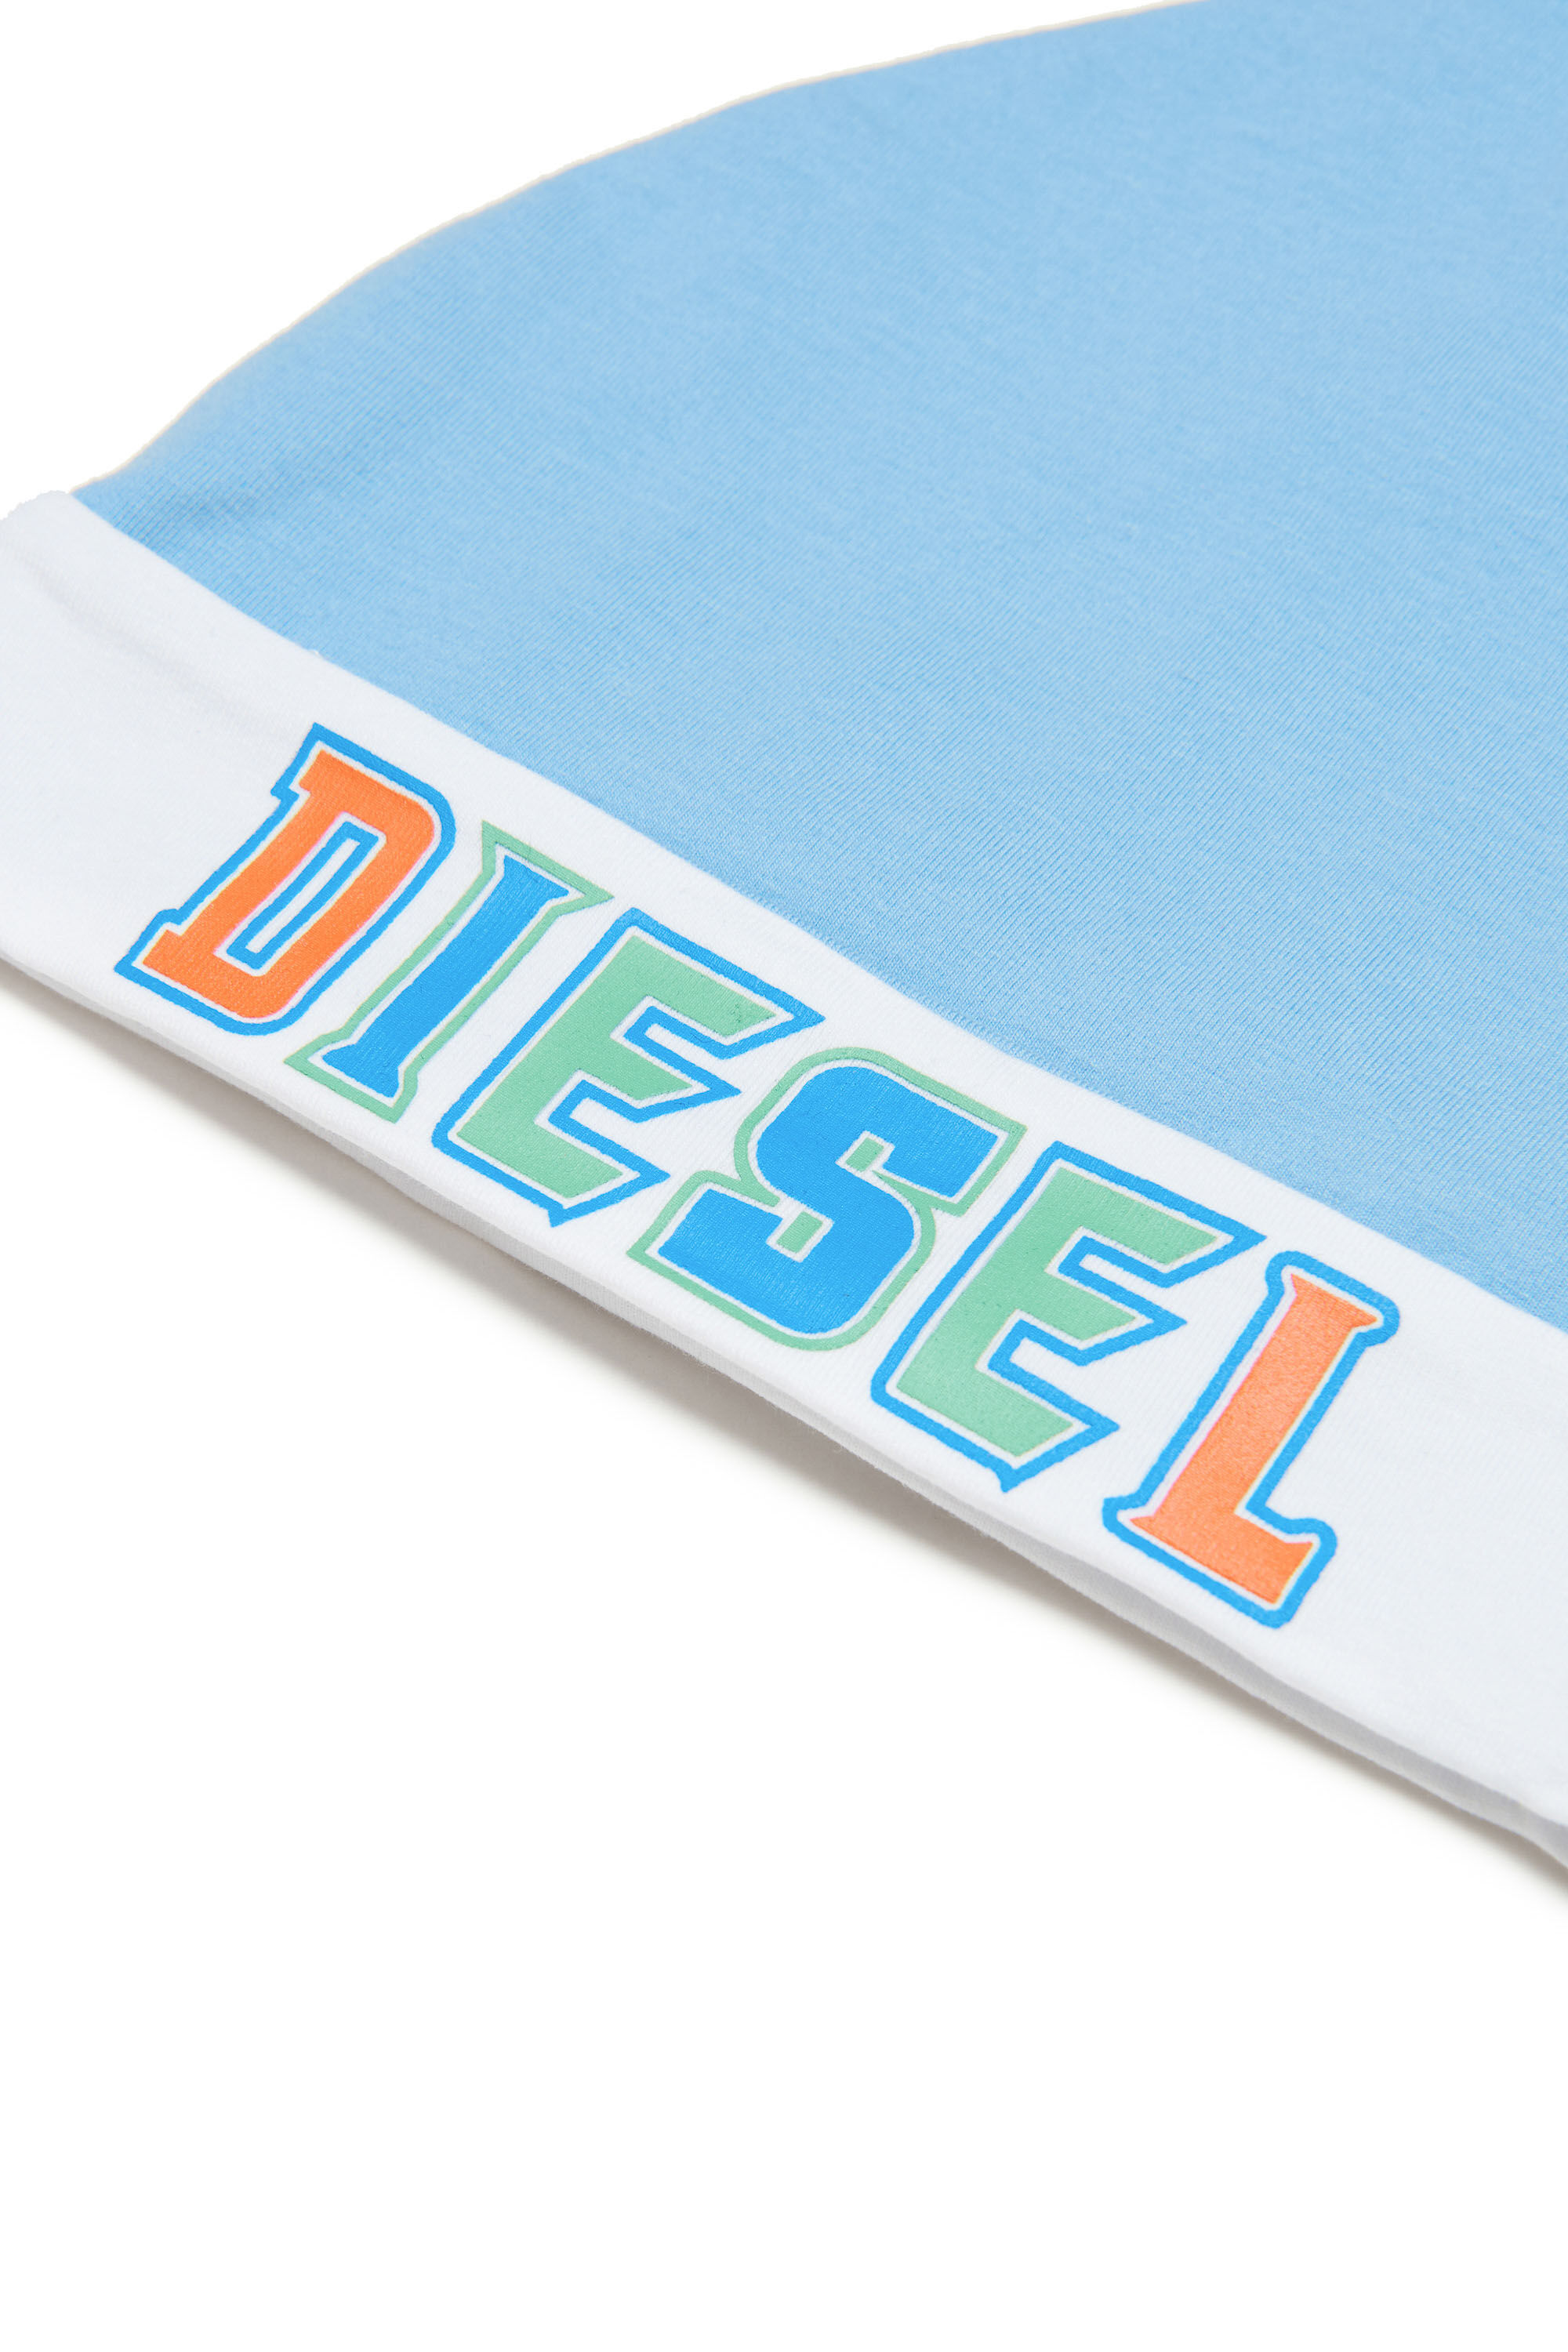 Diesel - FRIL-NB, Light Blue - Image 3